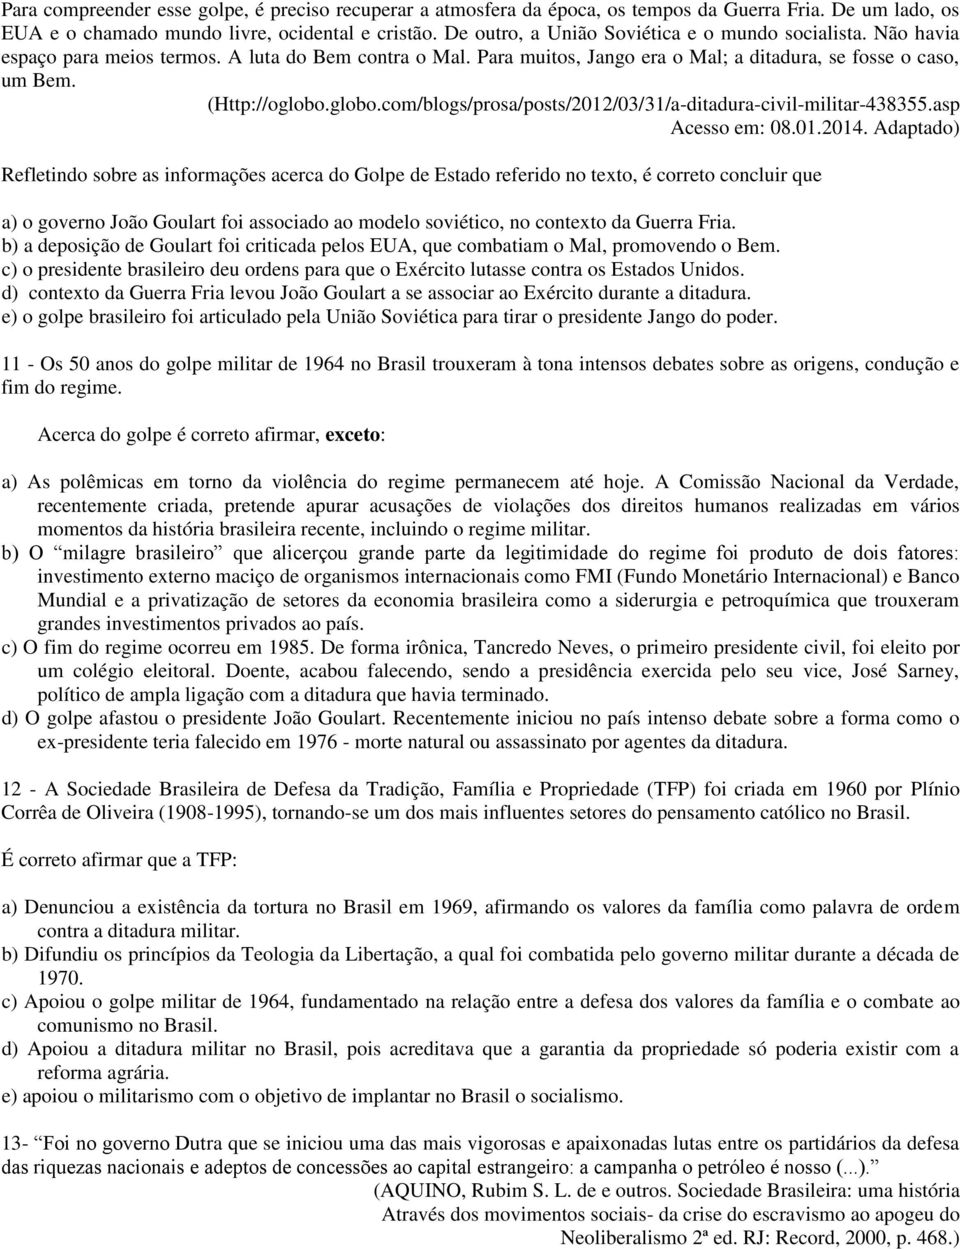 globo.com/blogs/prosa/posts/2012/03/31/a-ditadura-civil-militar-438355.asp Acesso em: 08.01.2014.